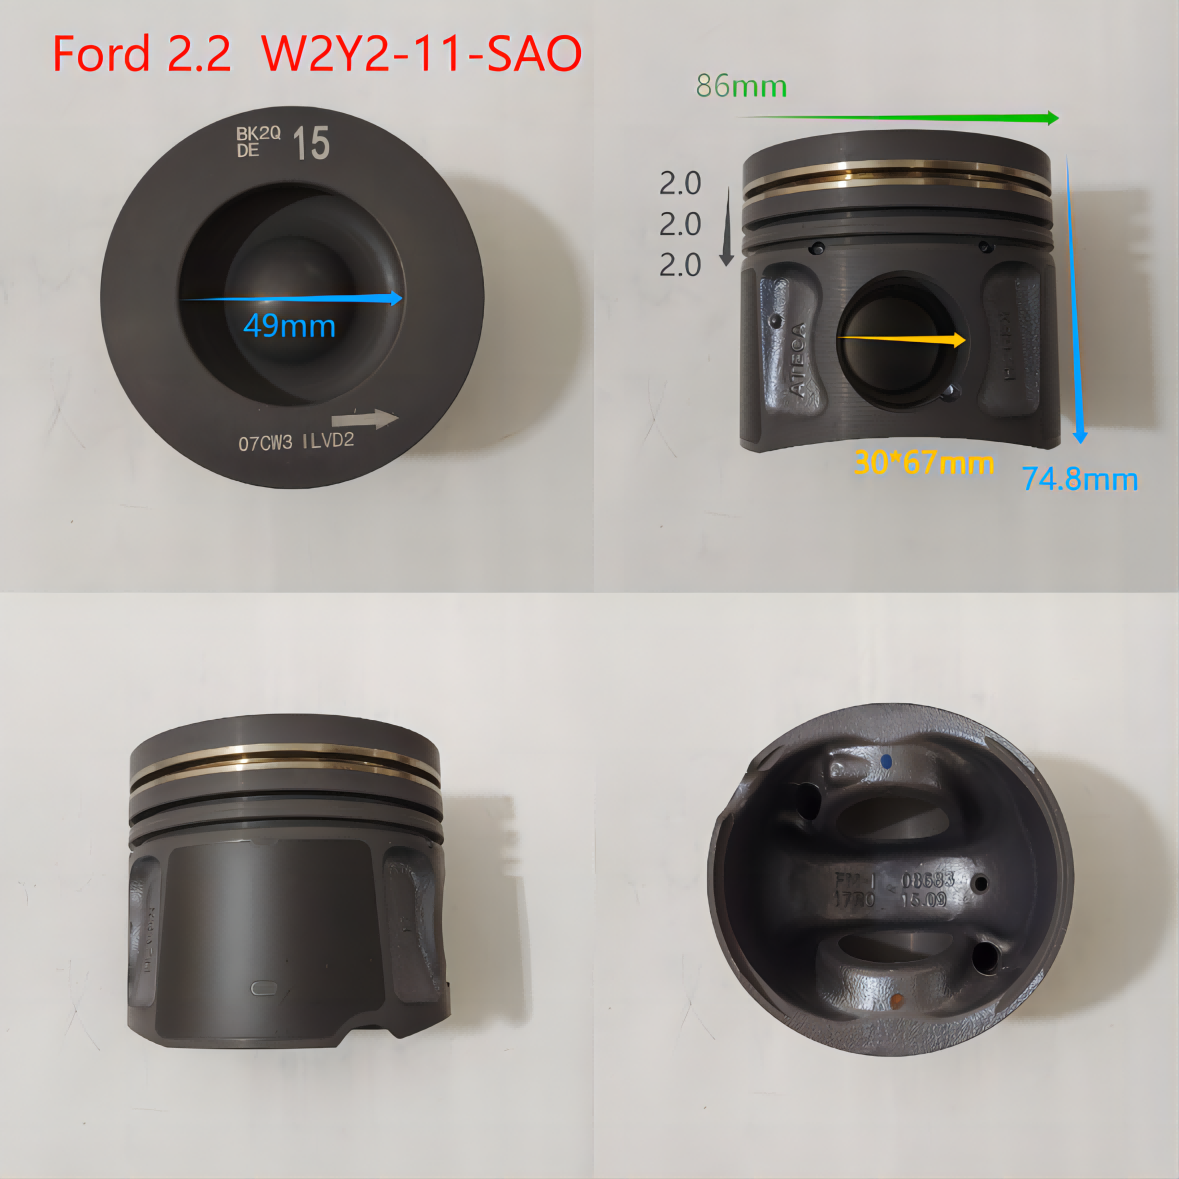 MAZDA/Ford 2.2 W2Y2-11-SAO